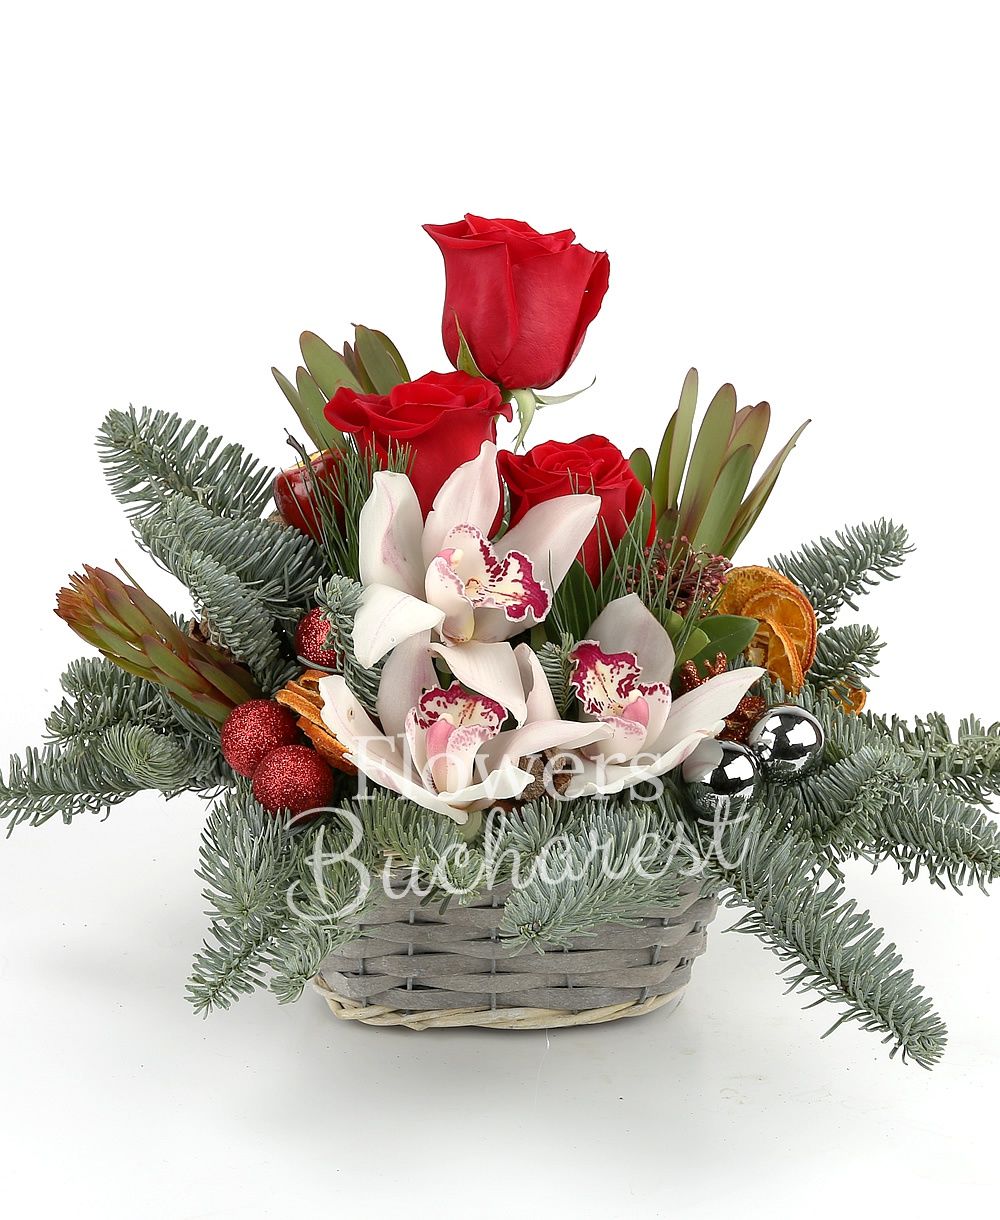 3 red roses, 3 leucadendron, white cymbidium, schimia, globes, dried orange slices, basket